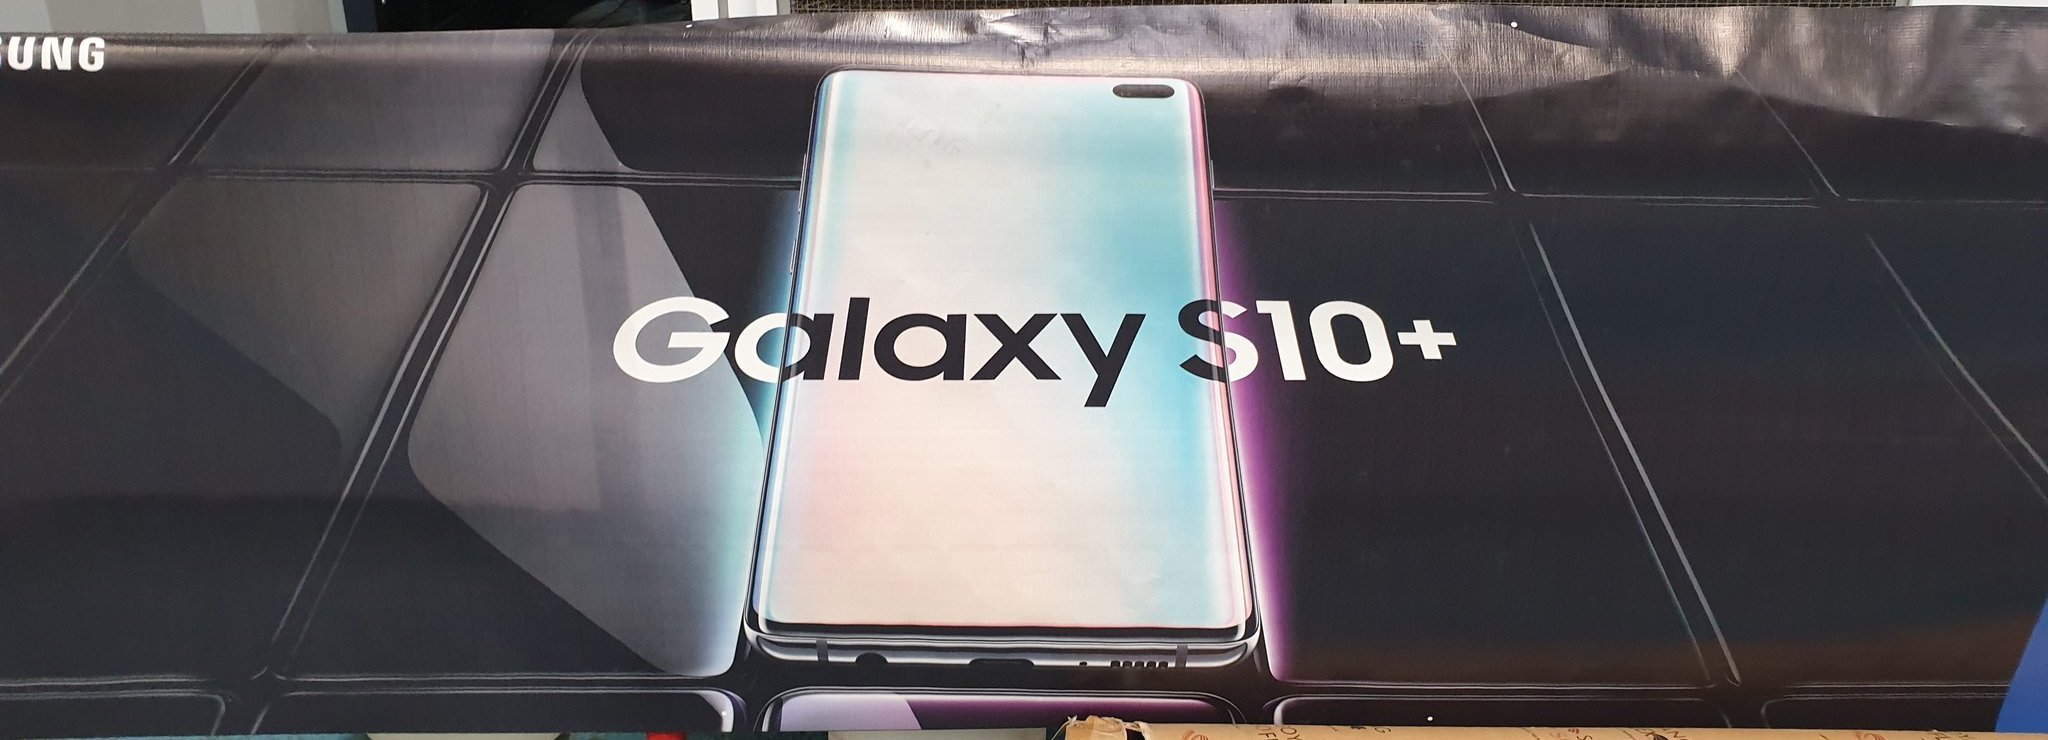 Galaxy S10 Plus, Tanıtım Afişinde Göründü